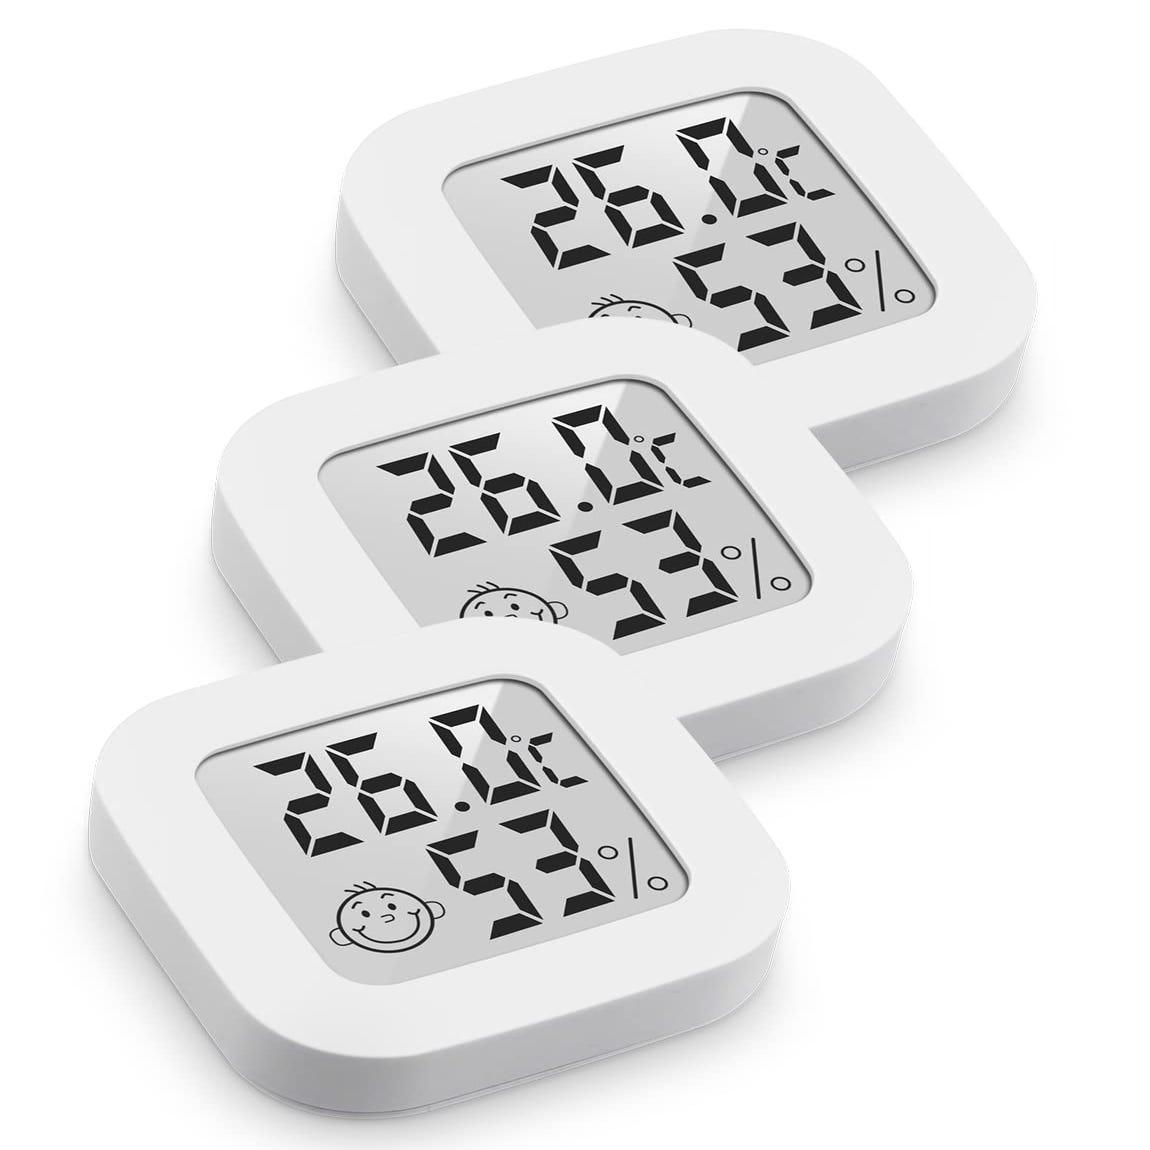 Thermomètre hygromètre intérieur pour l'intérieur, thermomètre numérique -  Thermomètre intérieur - Thermomètre d'intérieur - Mini thermomètre